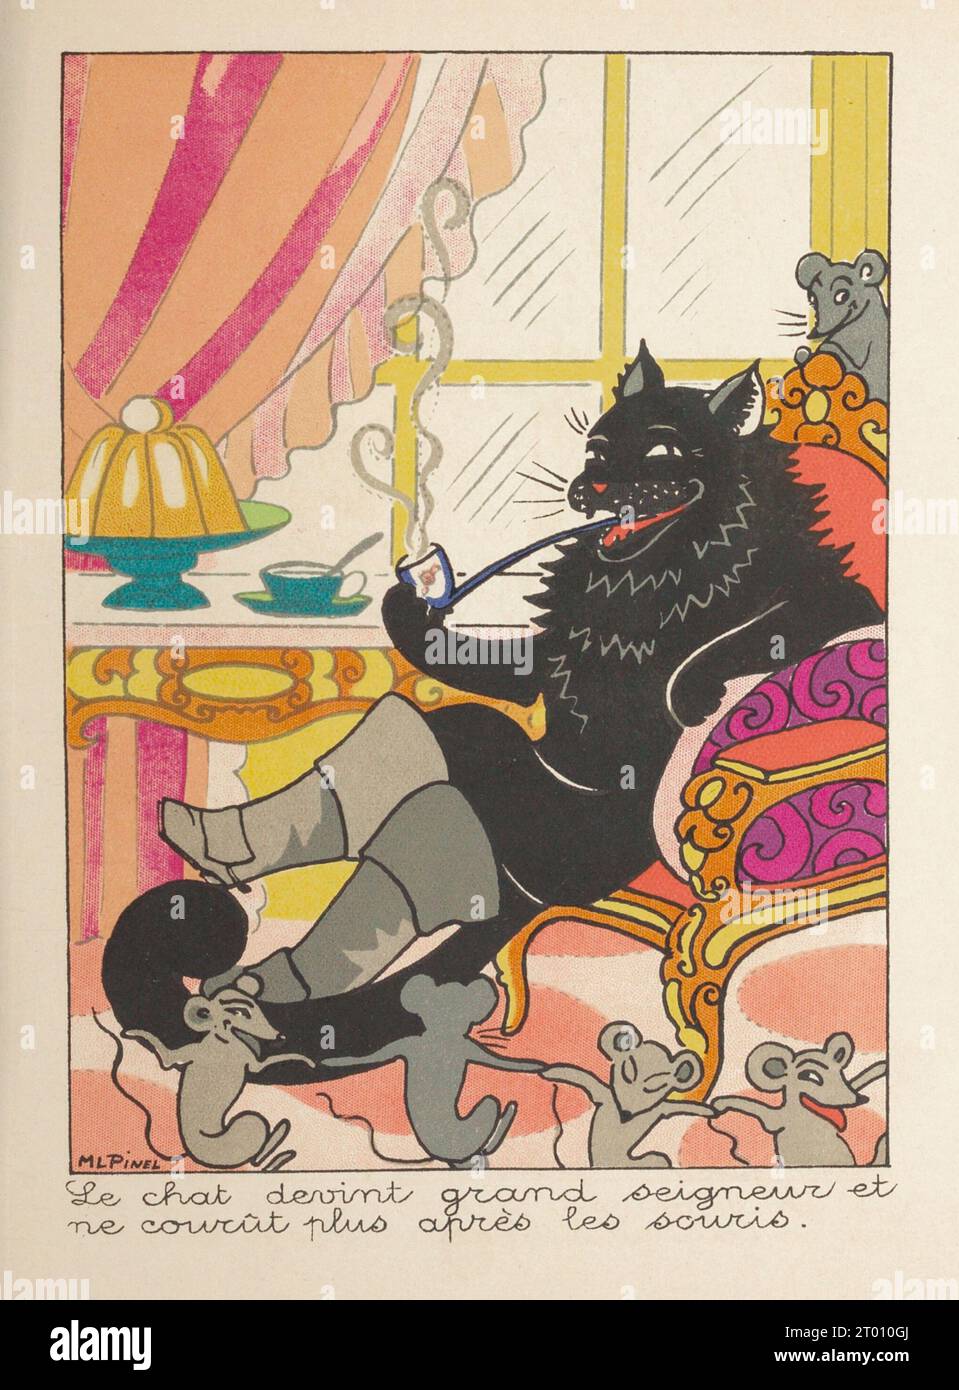 Il gatto divenne un grande signore e smise di inseguire i topi. Illustrazione pubblicata nel libro "le chat botté" di Marie-Louise Pinel, pubblicato da Bourgeois Ainé nel 1890. Foto Stock